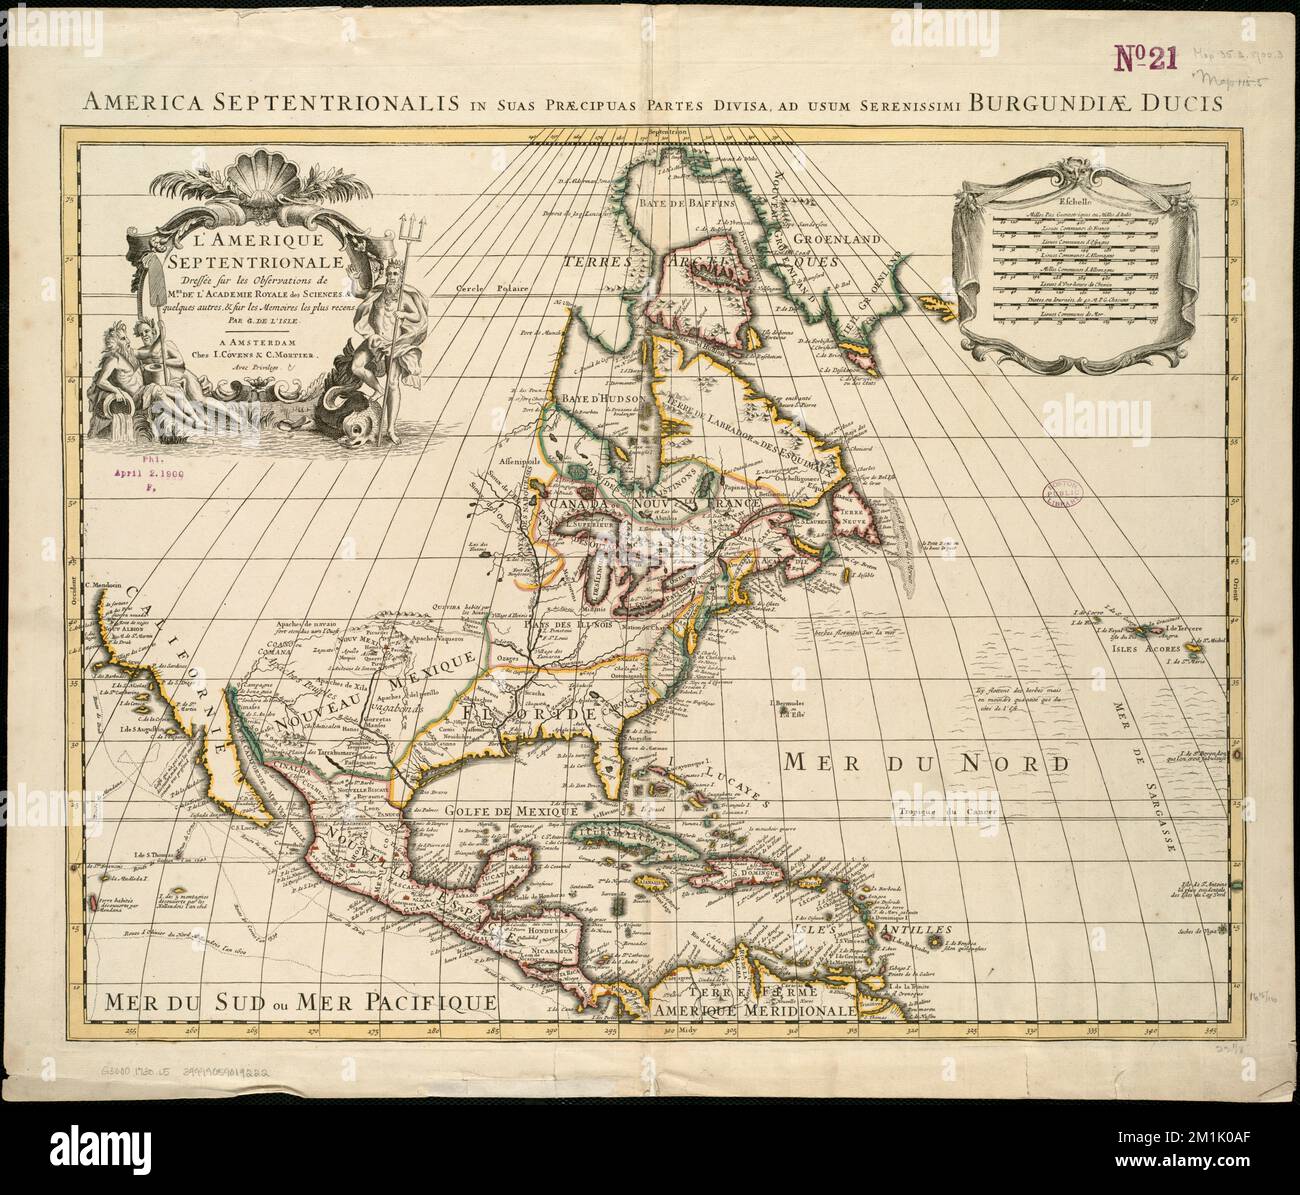 L'Amerique septentrionale, Nordamerika, Karten, frühe Werke 1800 Norman B. Leventhal Map Center Collection Stockfoto